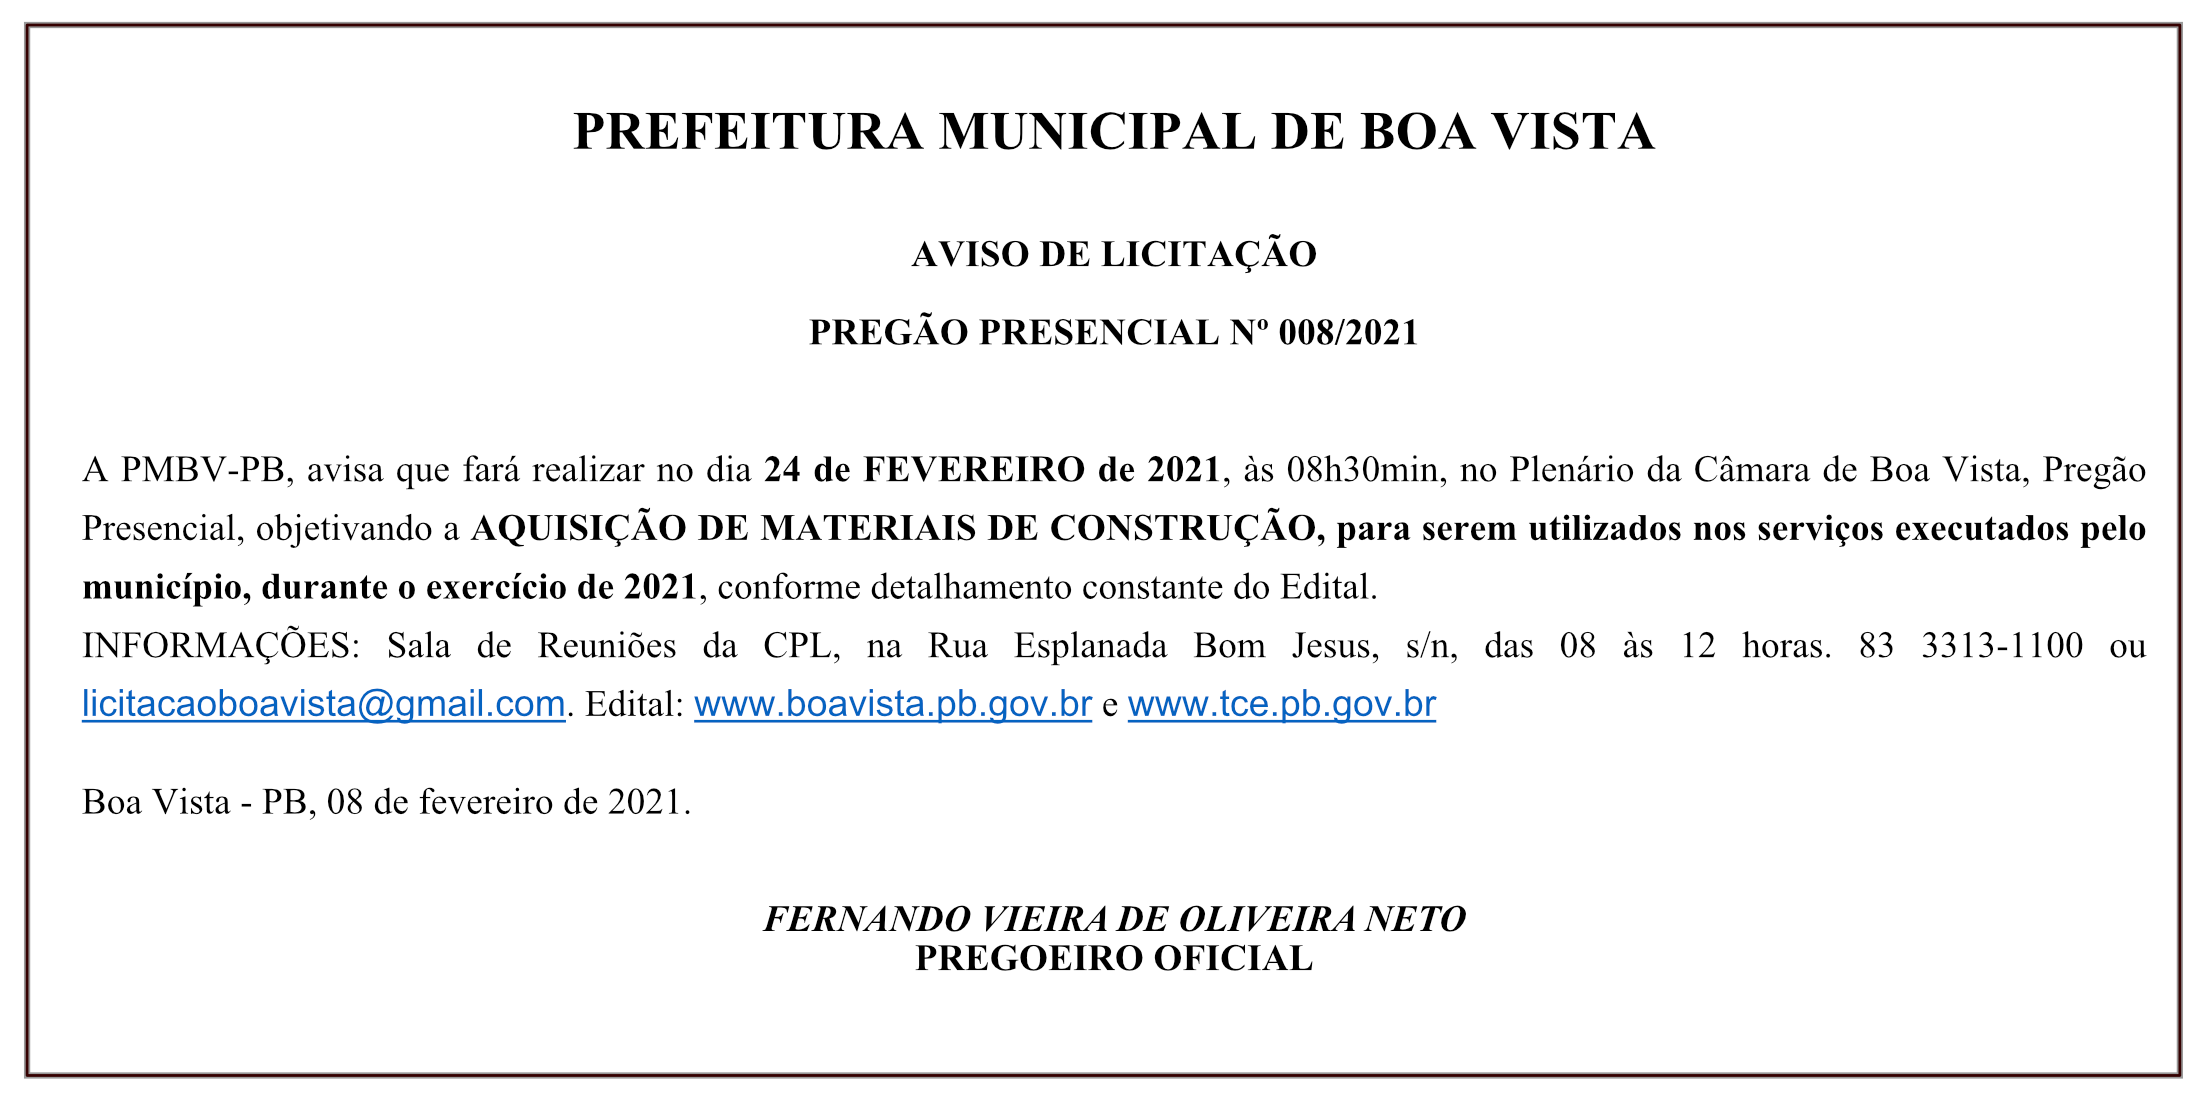 PREFEITURA MUNICIPAL DE BOA VISTA – AVISO DE LICITAÇÃO – PREGÃO PRESENCIAL Nº 008/2021